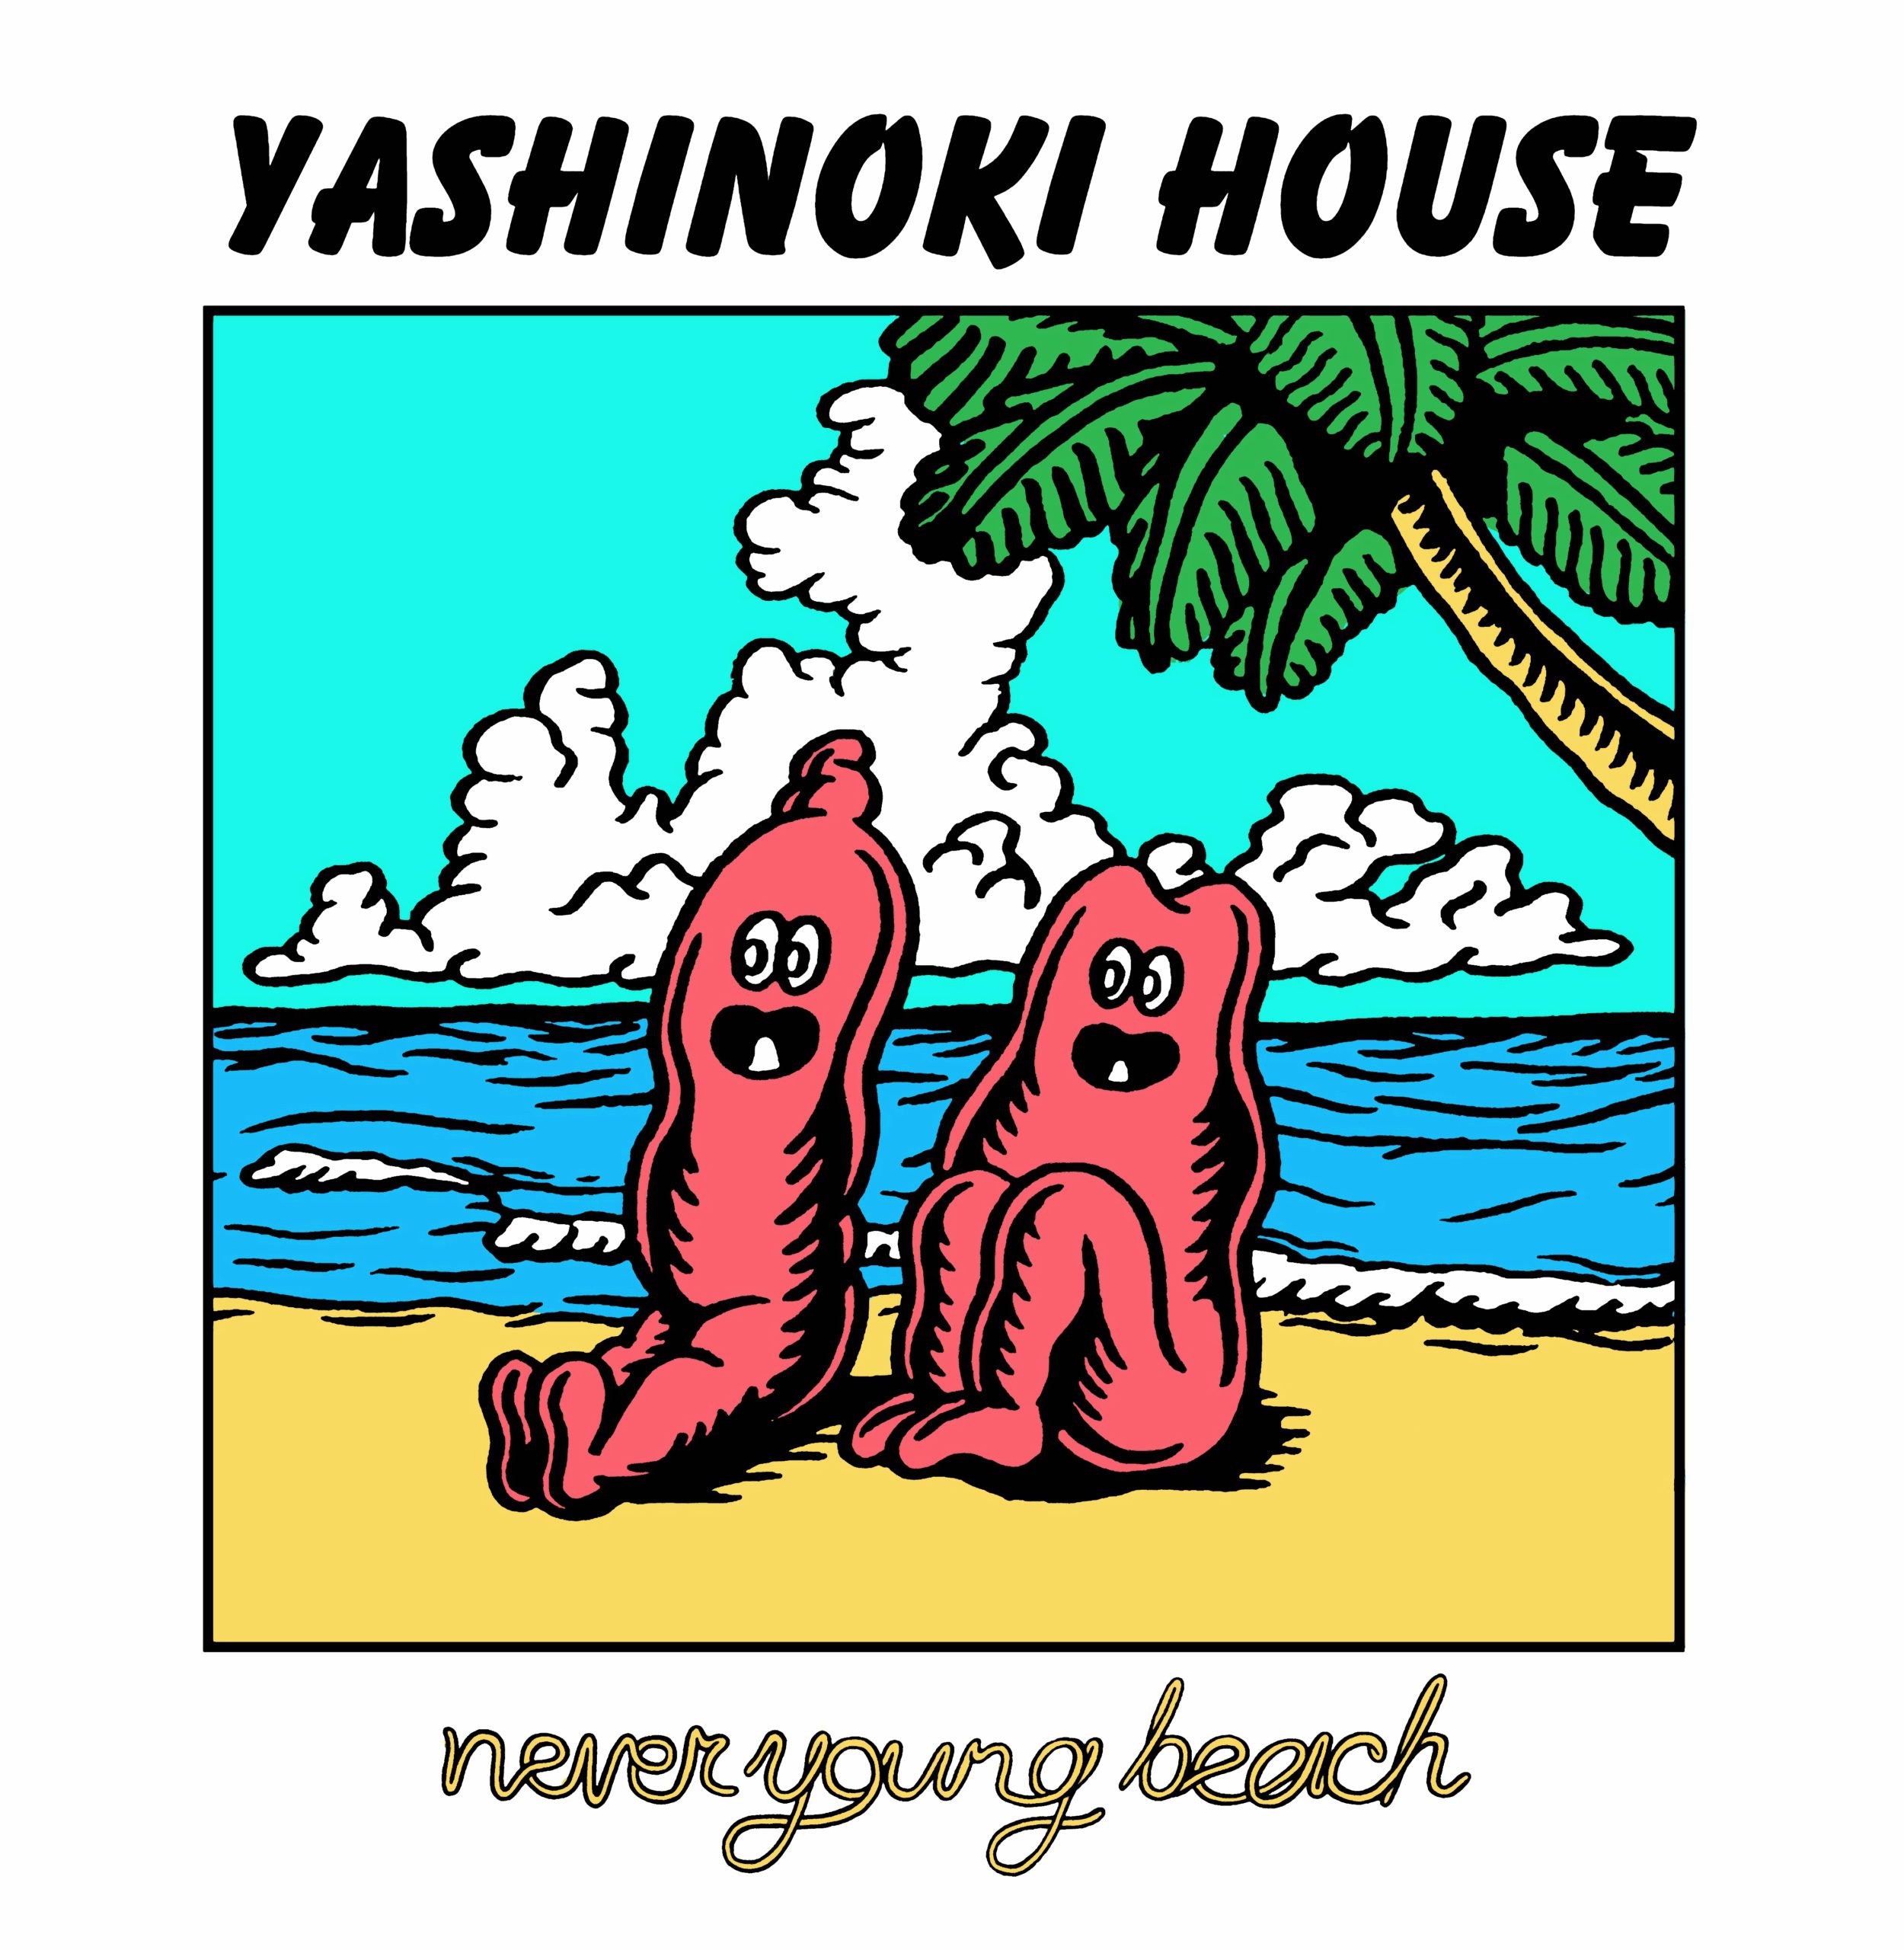 【レコード】Never Young Beach YASHINOKI HOUSE新品で購入し数回聴きました